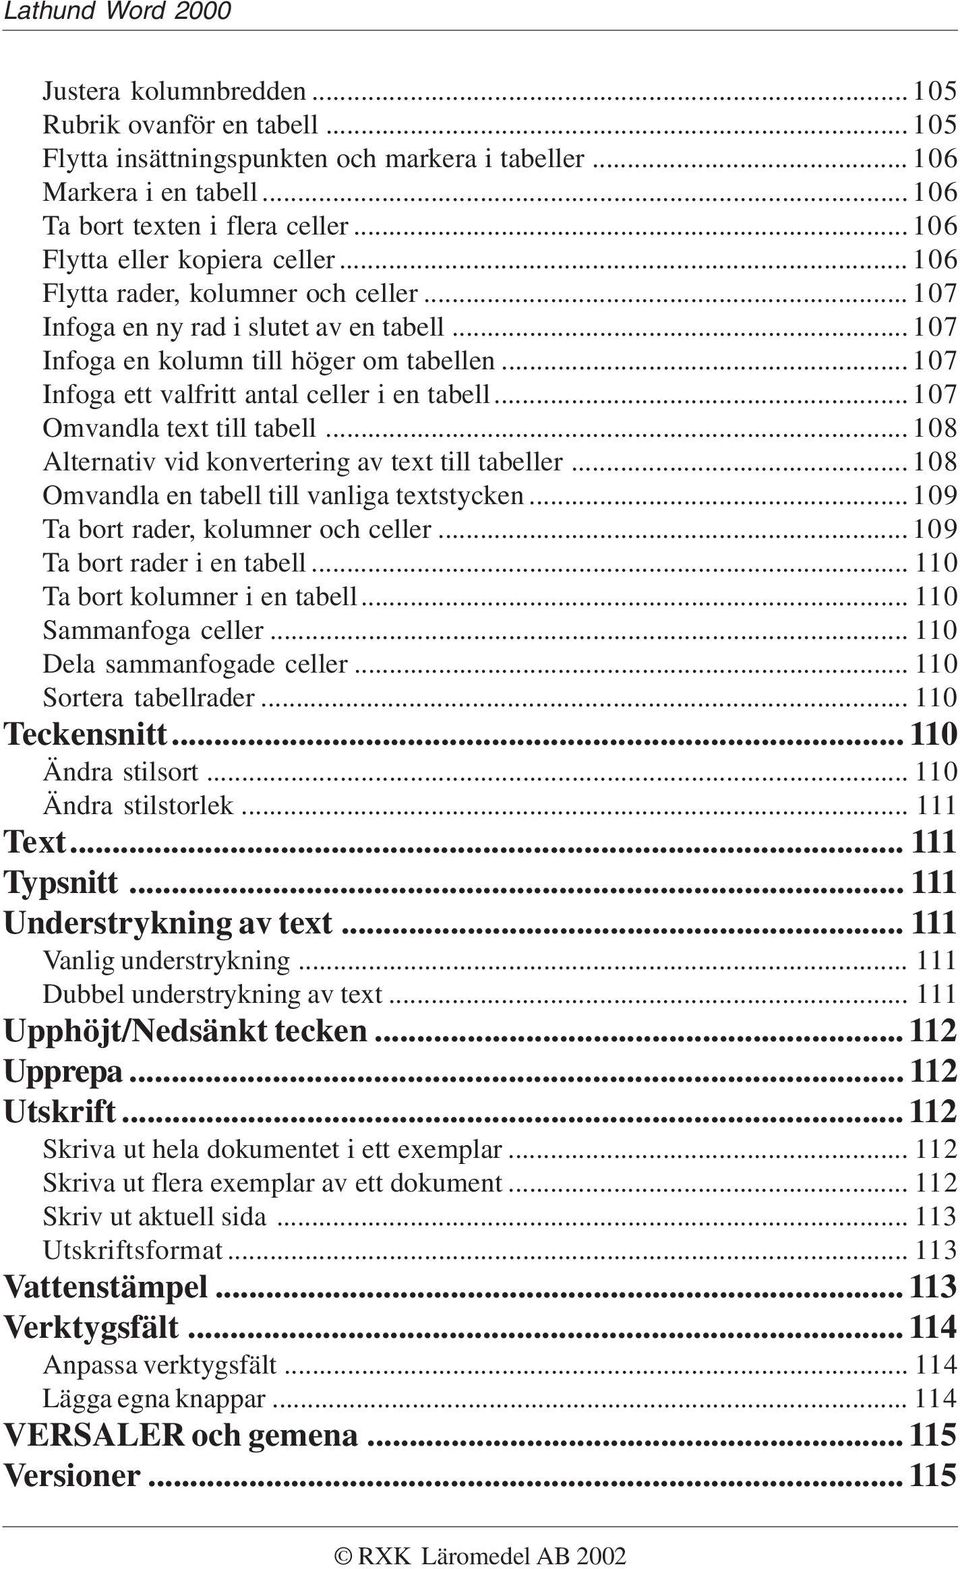 .. 107 Infoga ett valfritt antal celler i en tabell... 107 Omvandla text till tabell... 108 Alternativ vid konvertering av text till tabeller... 108 Omvandla en tabell till vanliga textstycken.